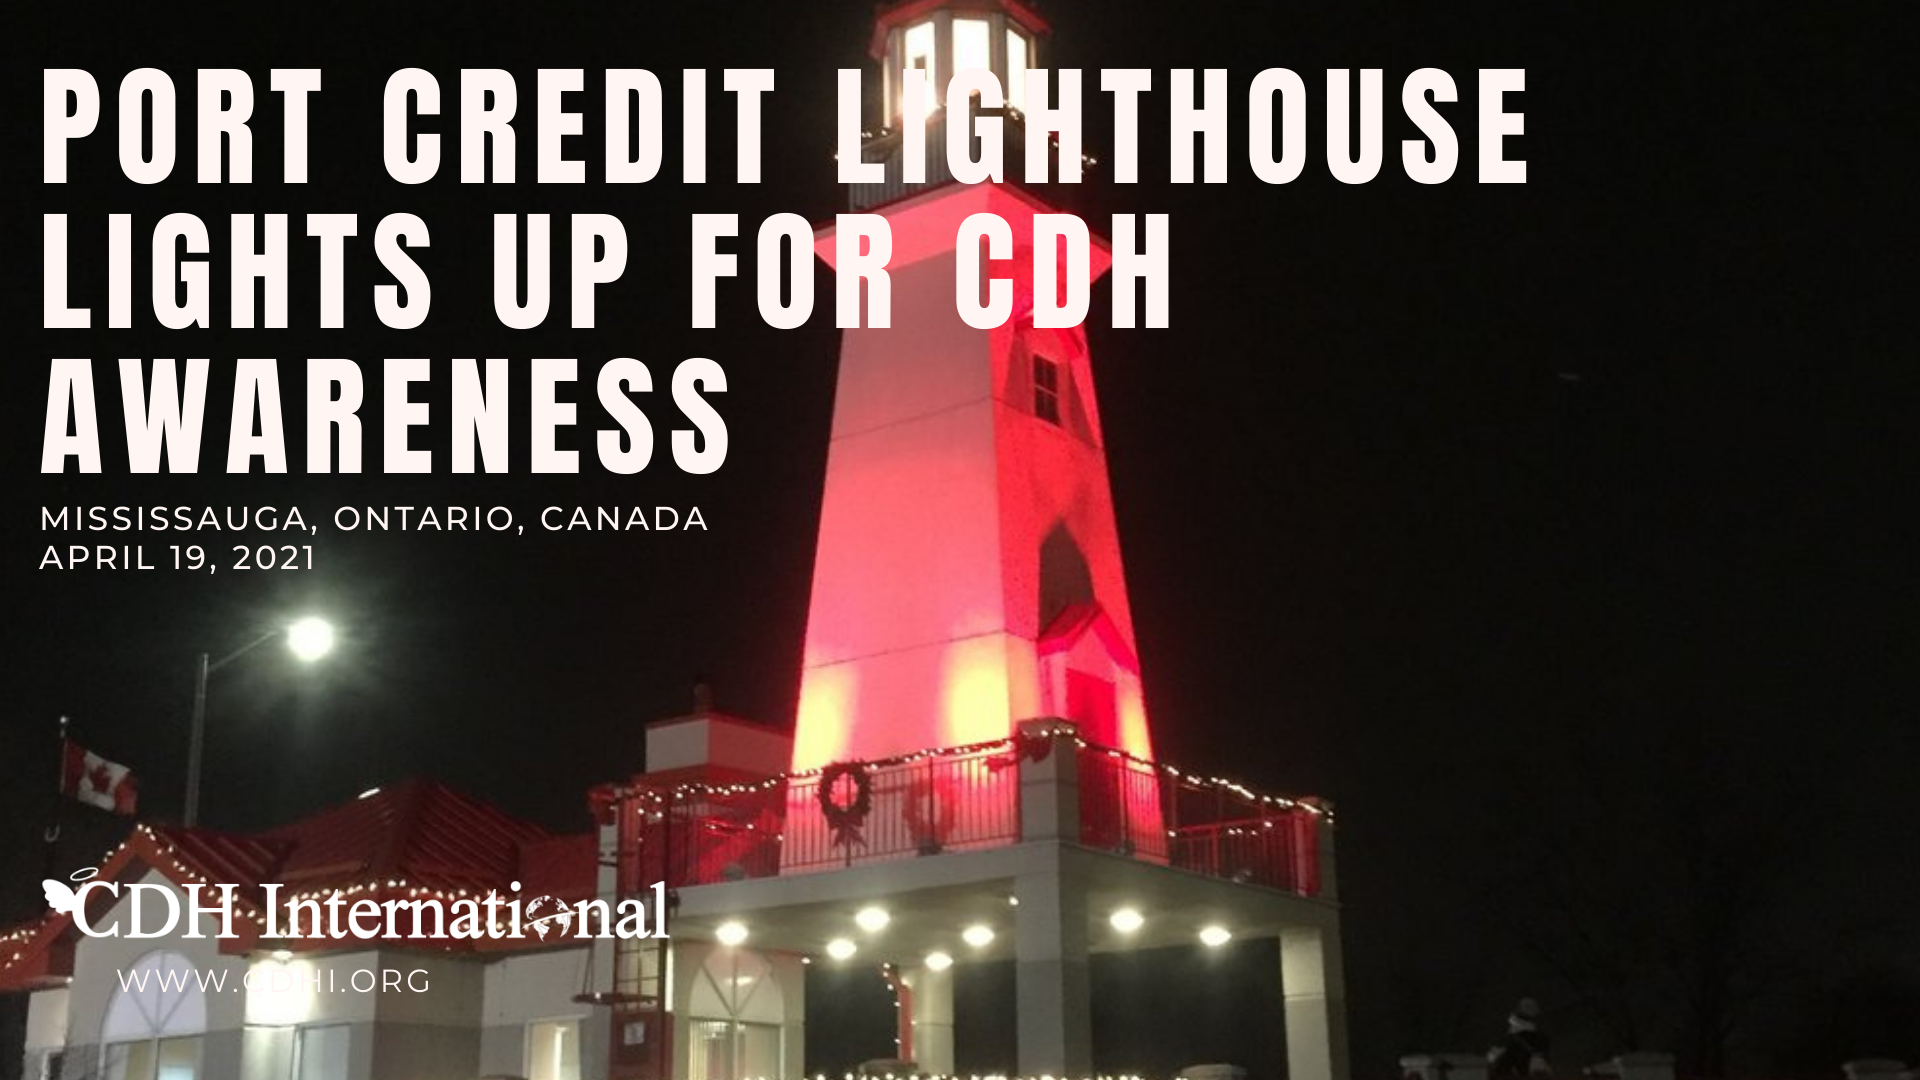 The Pedestrian Bridge Lights Up for CDH Awareness